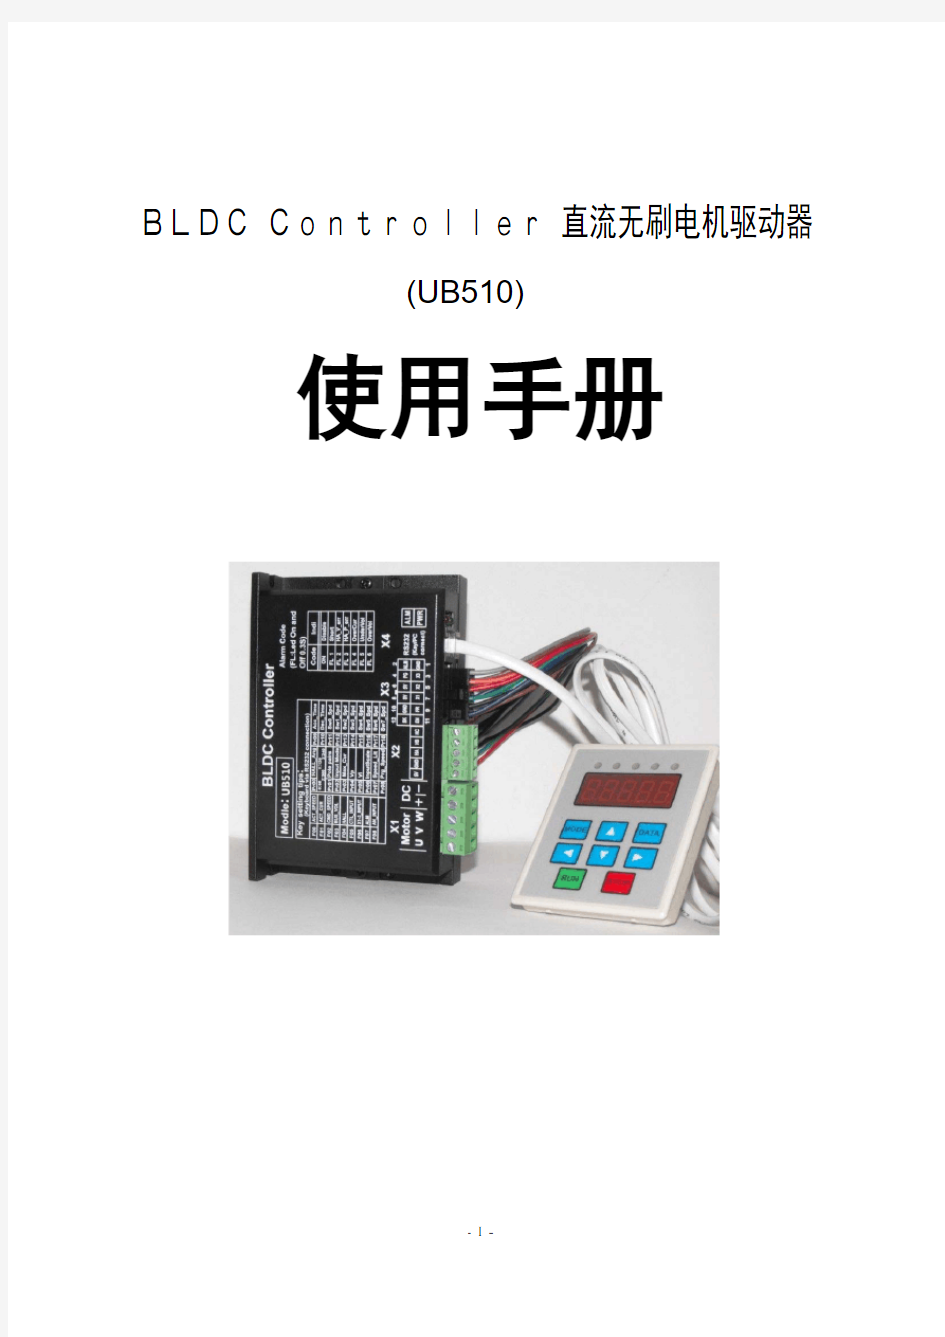 优普路UB510直流无刷电机驱动器(BLDC Controller)说明书